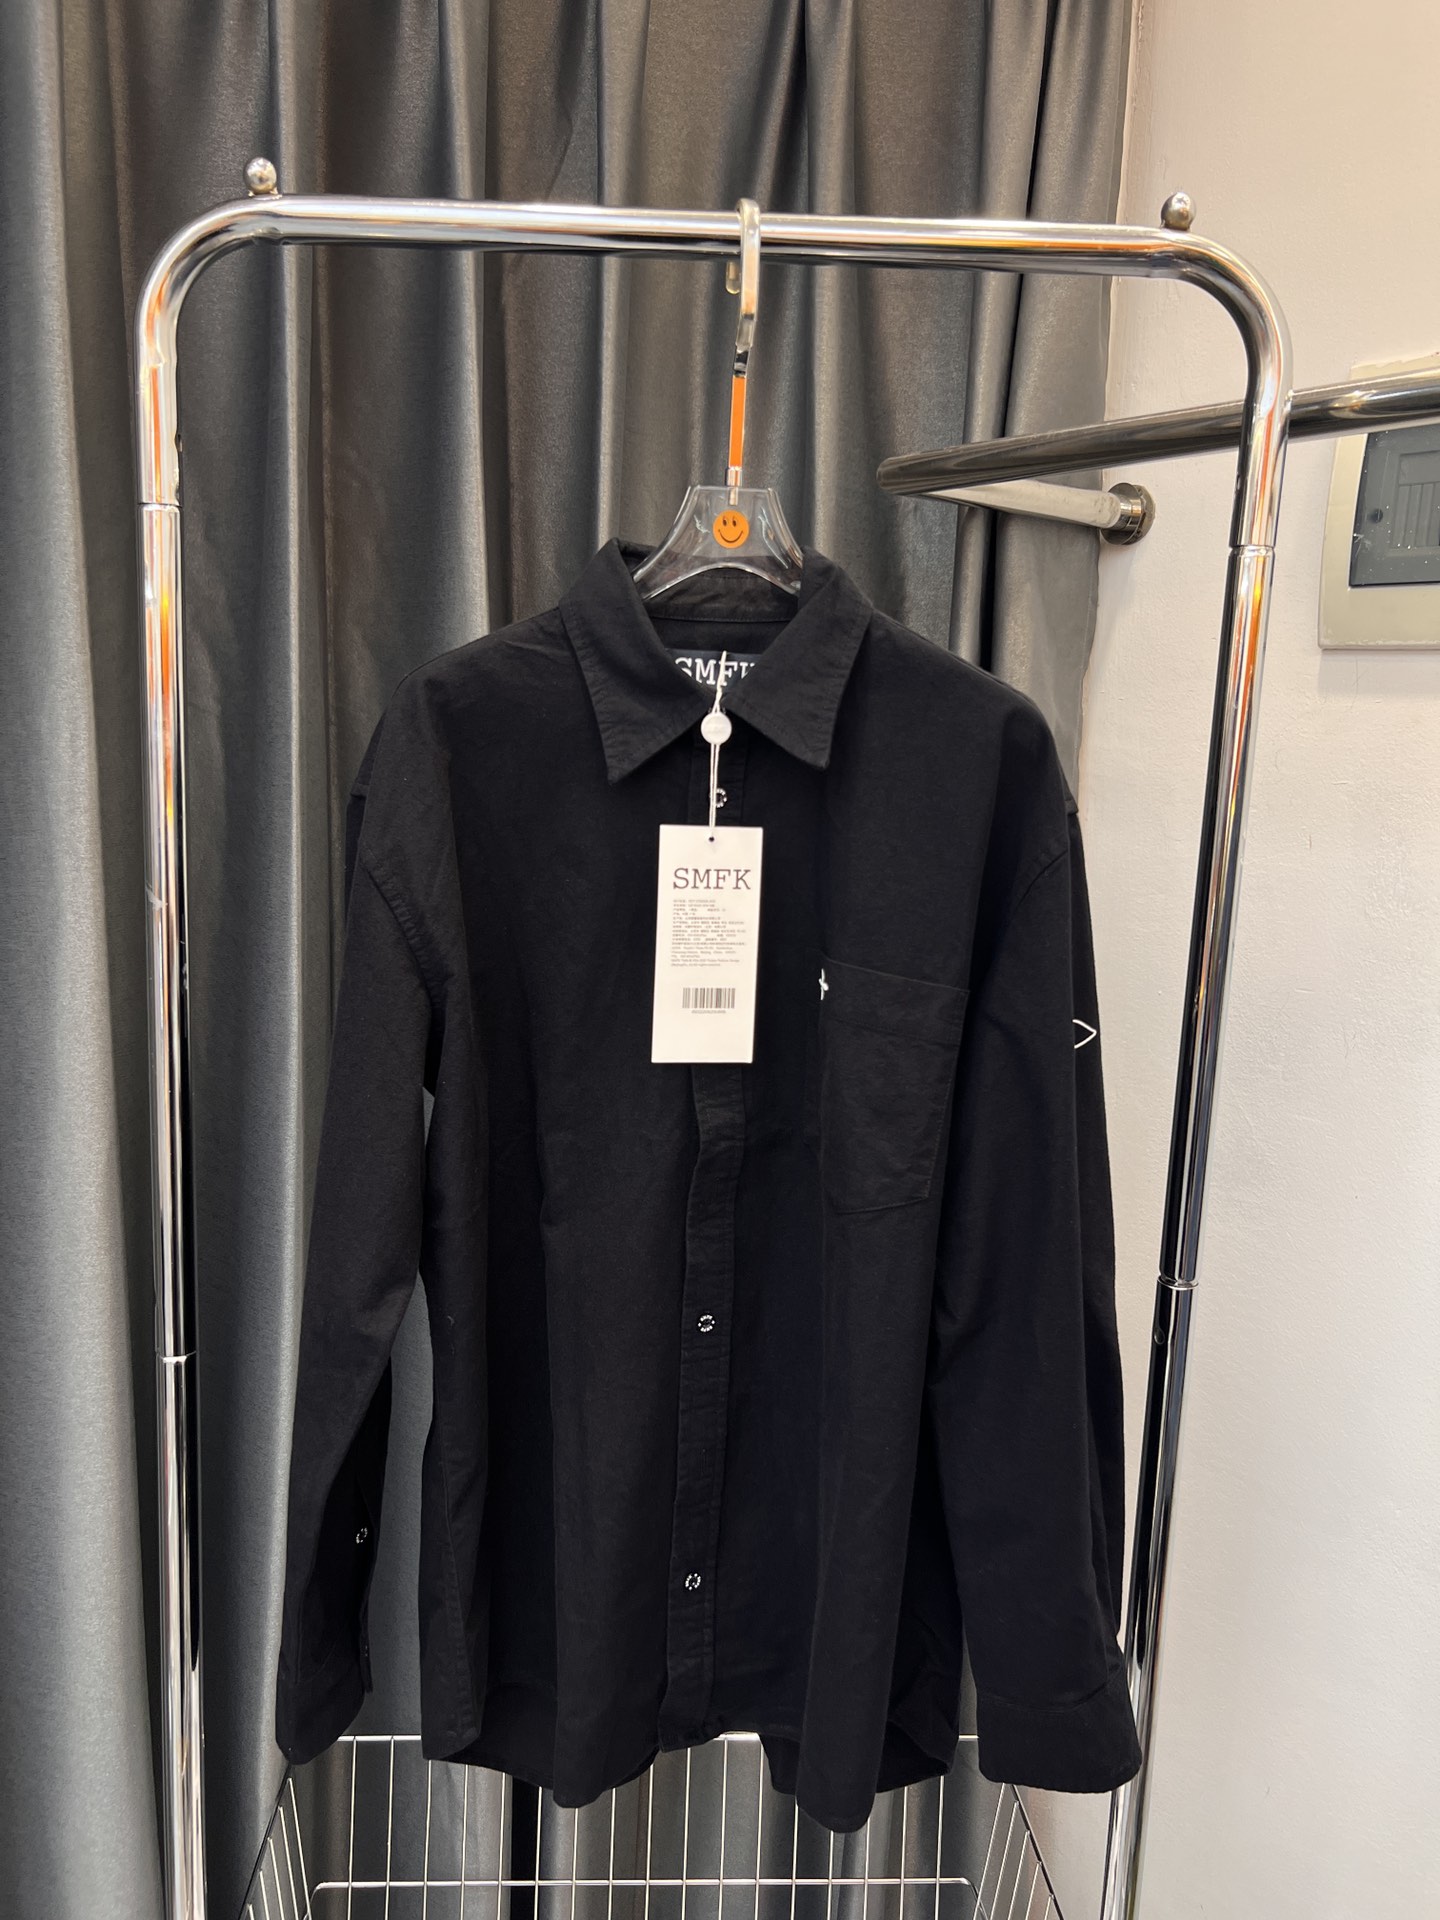 SMFKシャツ 洗い方スーパーコピー 人気 ファッション ビジネス カジュアル 刺繡シャツ ブラック_3